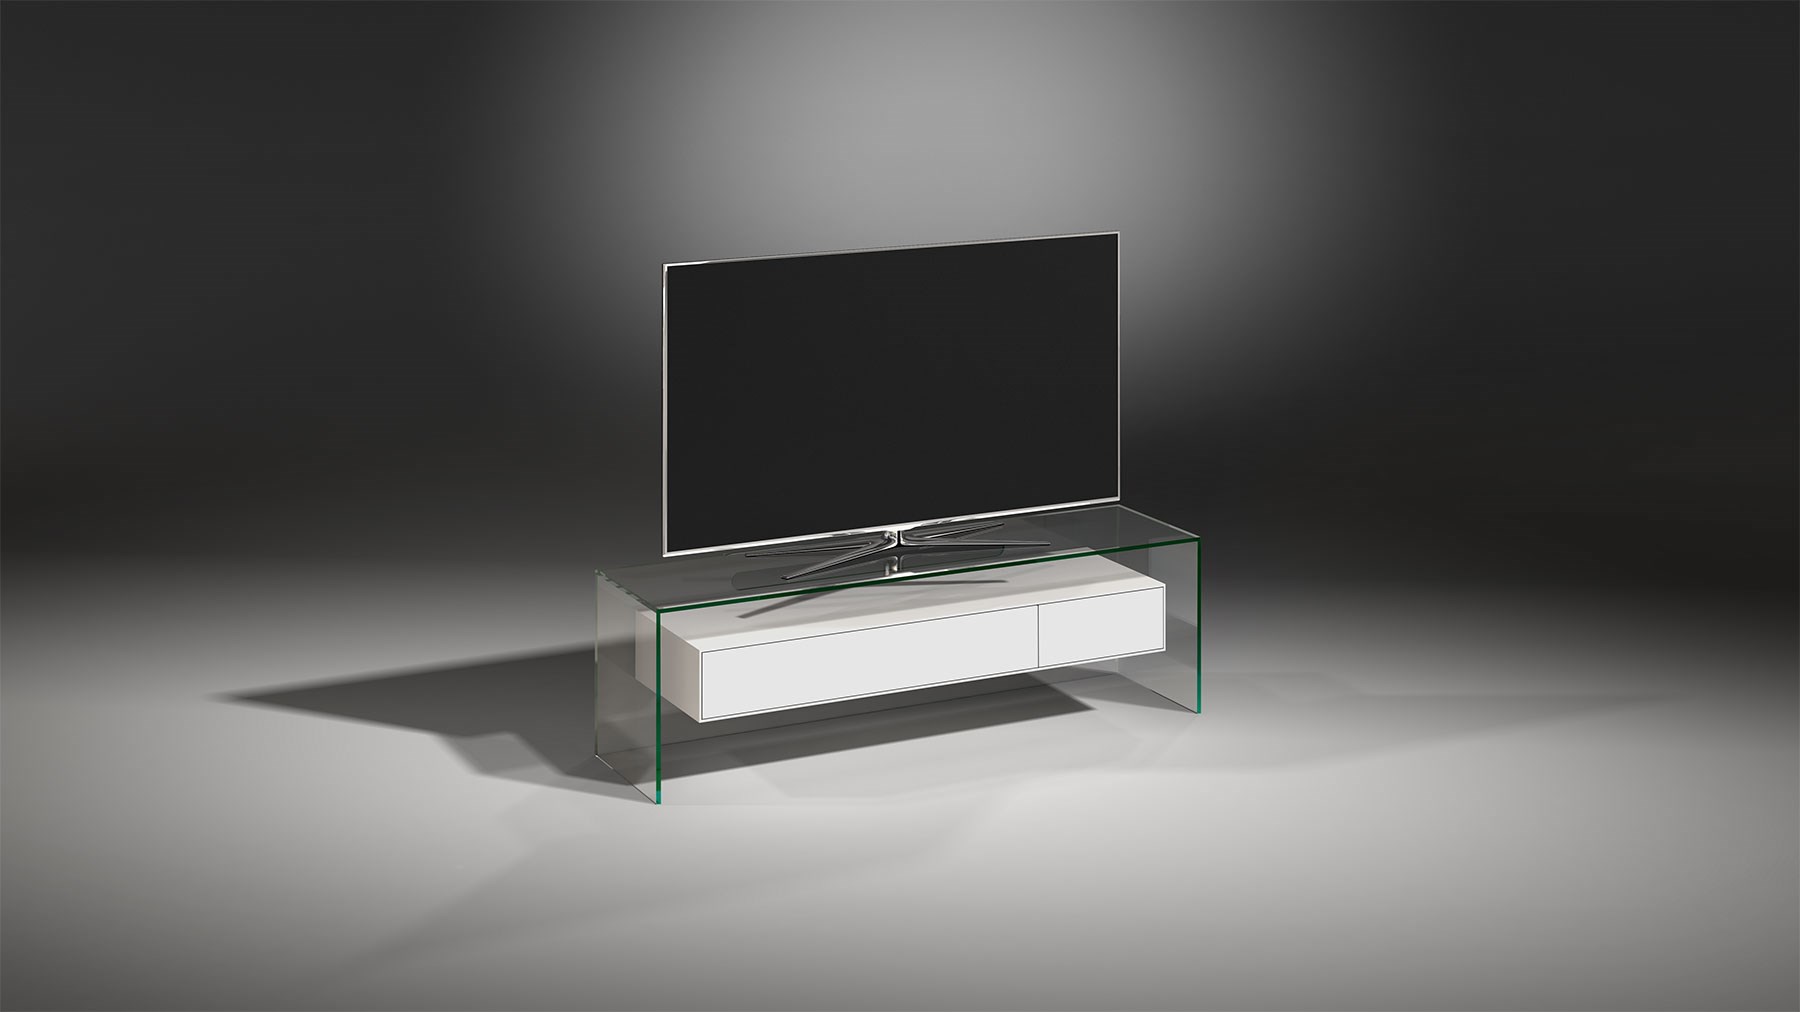 Fernsehrack aus Glas mit weiß lackiertem Schubladenelement - FLY 127 Floatglas - MDF seidenmatt weiß lackiert